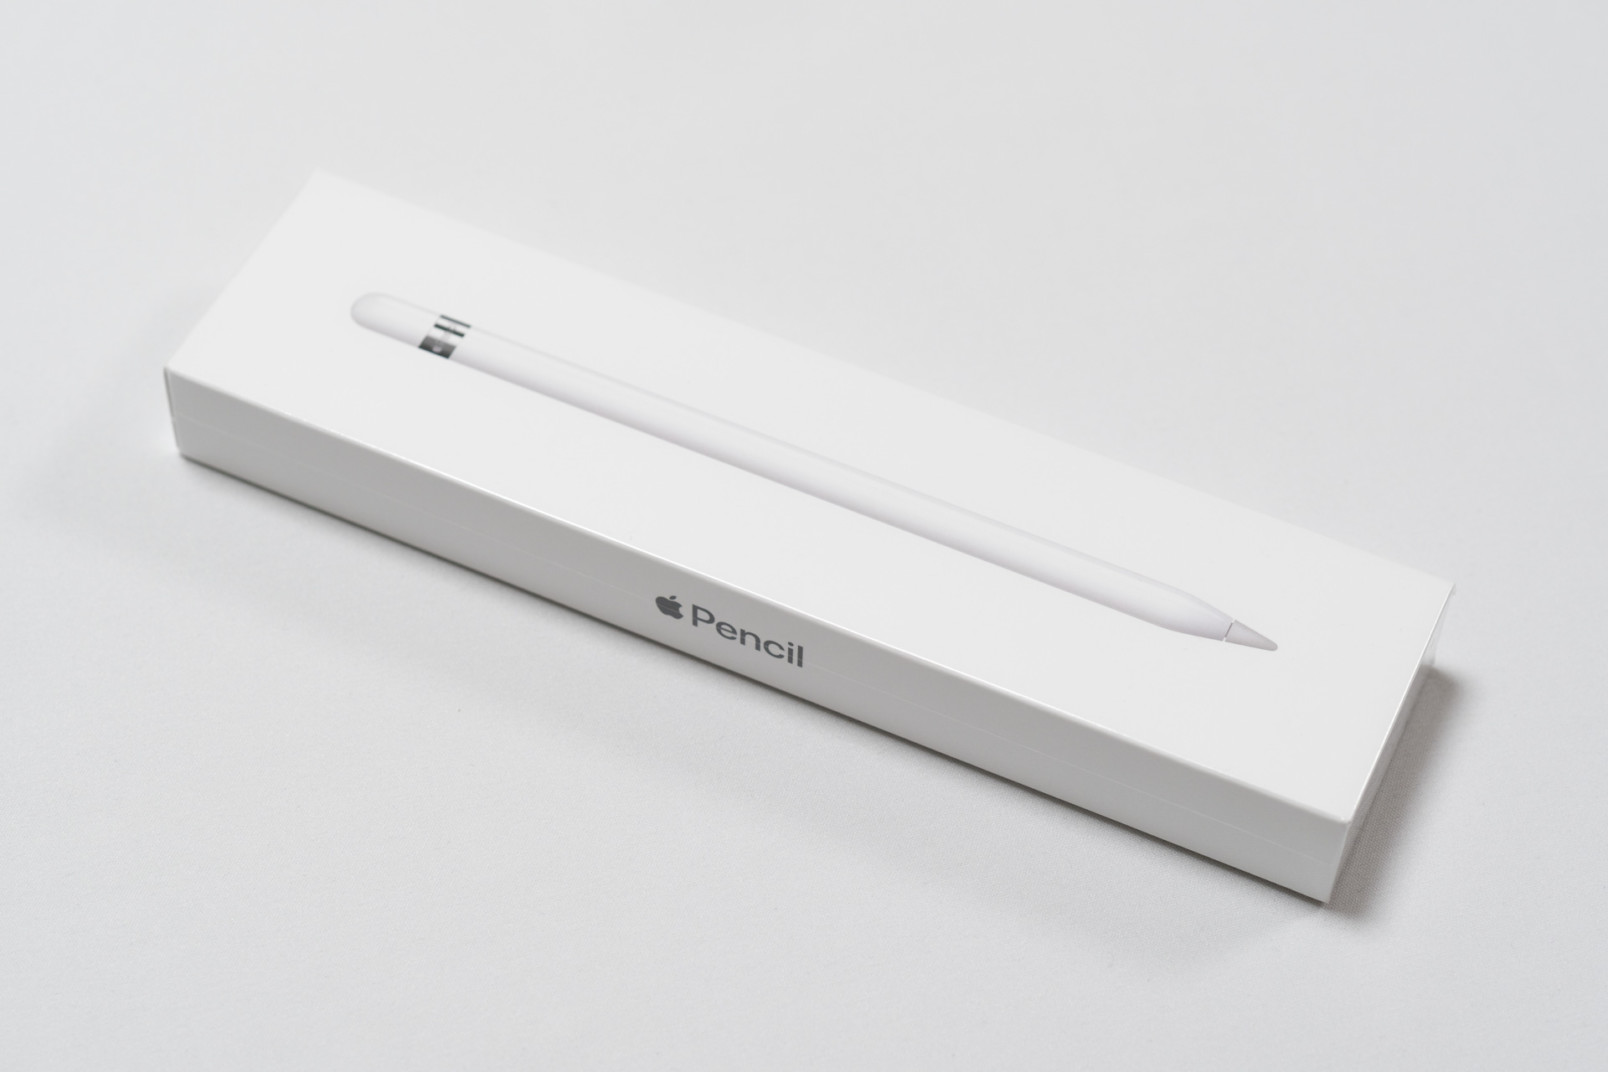 Apple Pencil 第一世代 箱あり - iPadアクセサリー